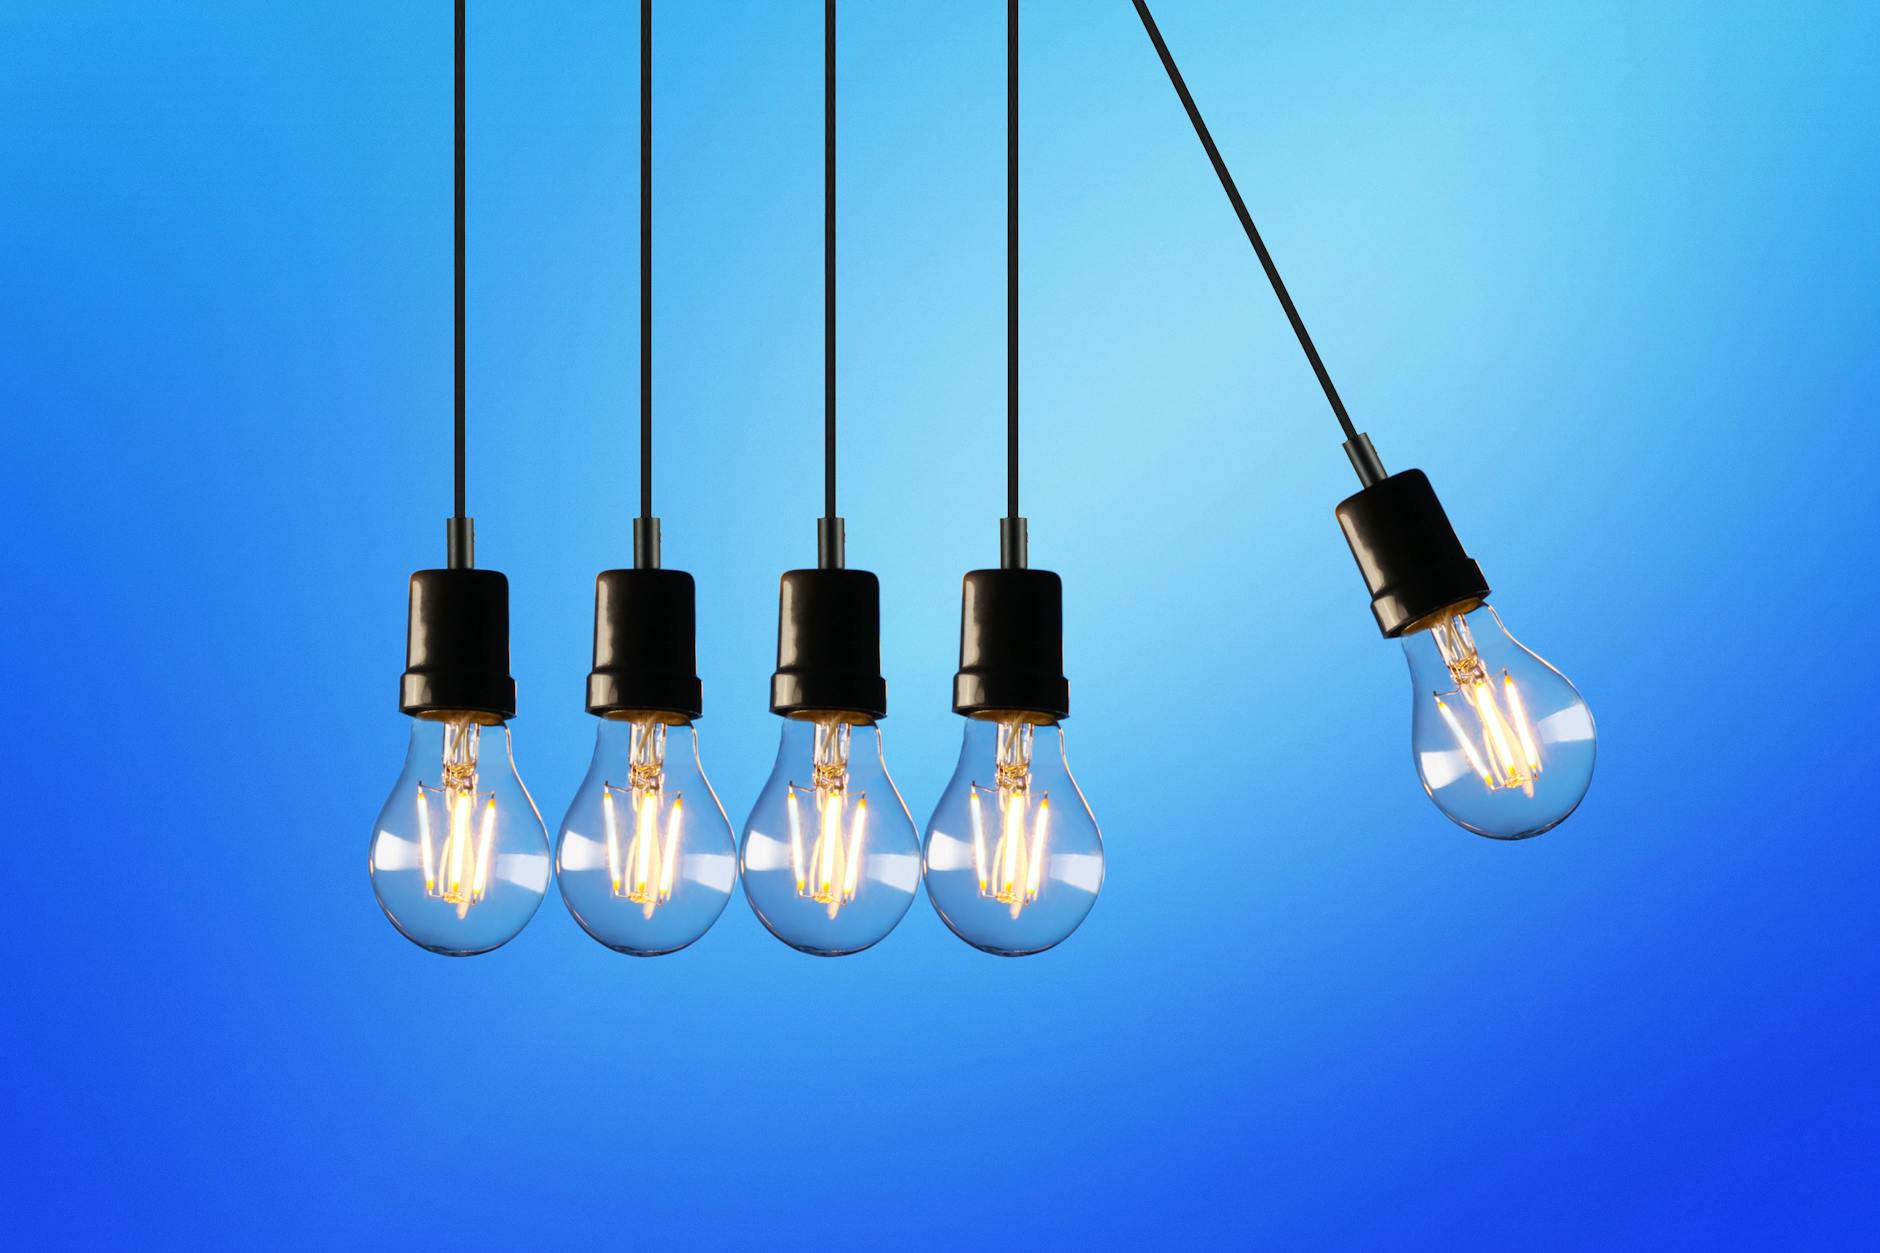 cinco lâmpadas incandescentes indicando que uma ideia pode criar um movimento que faz surgir novas ideais